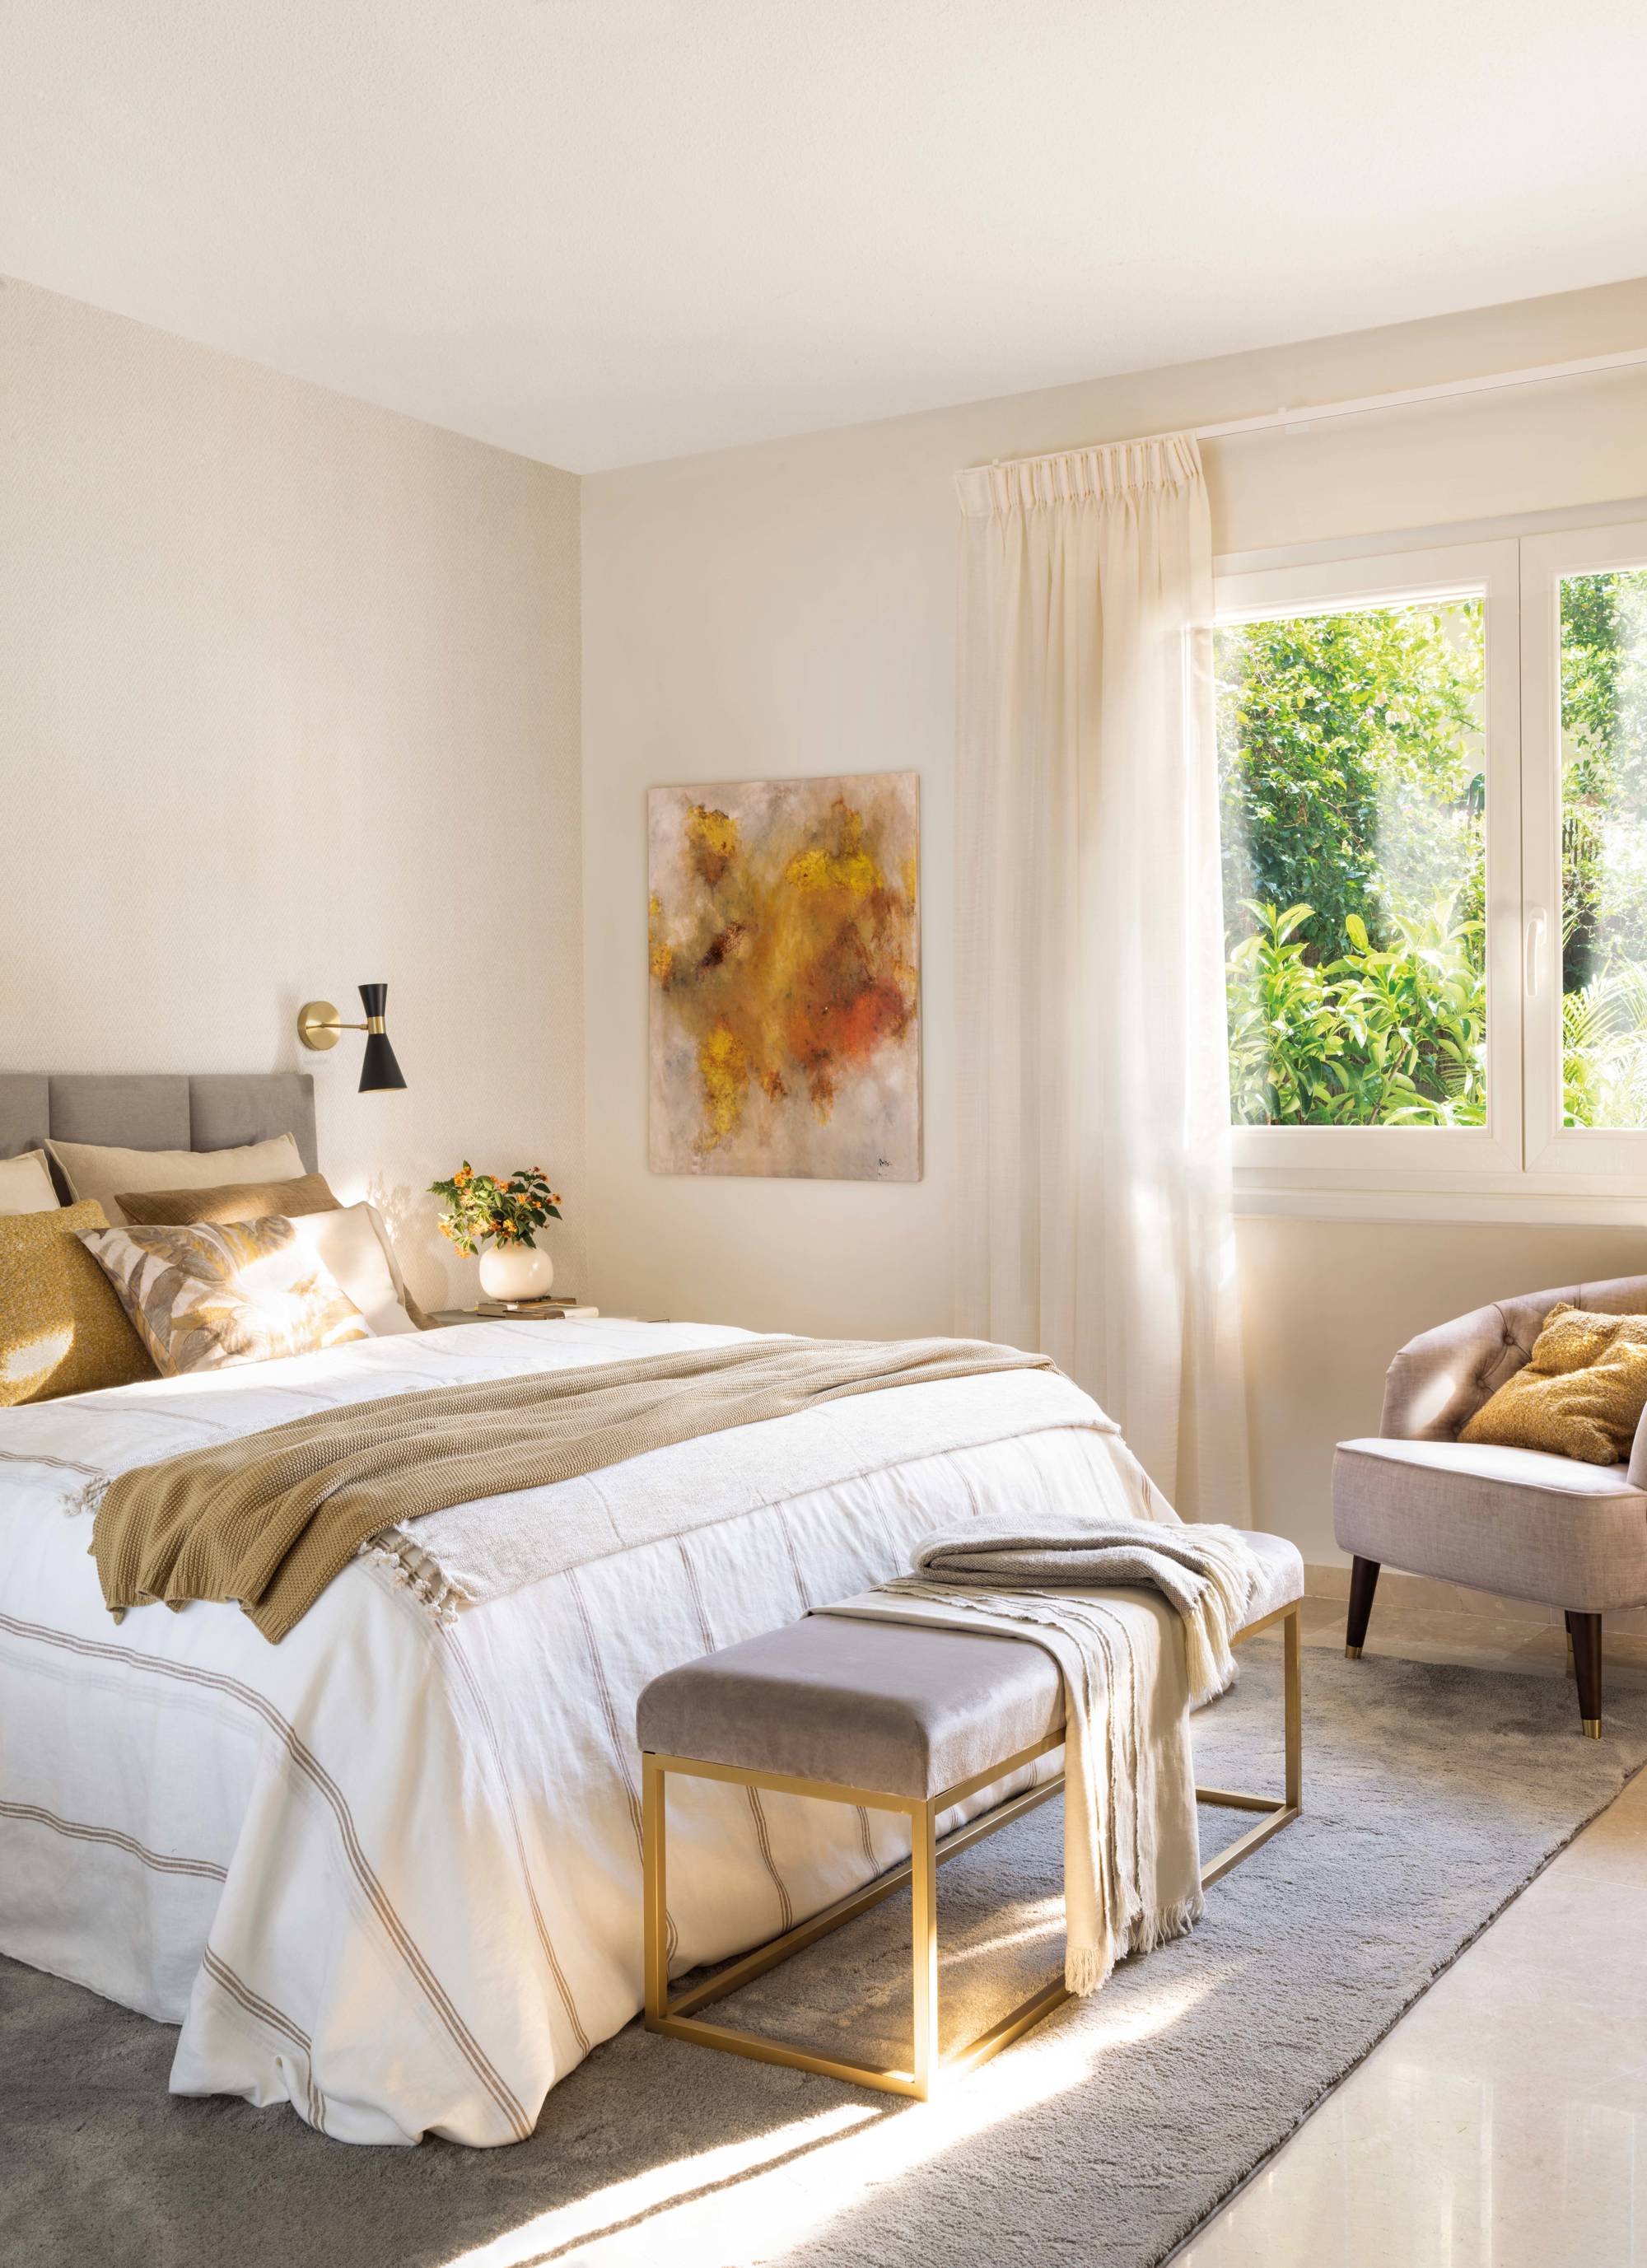 Dormitorio decorados en tonos neutros con butaca y banco a los pies de la cama.